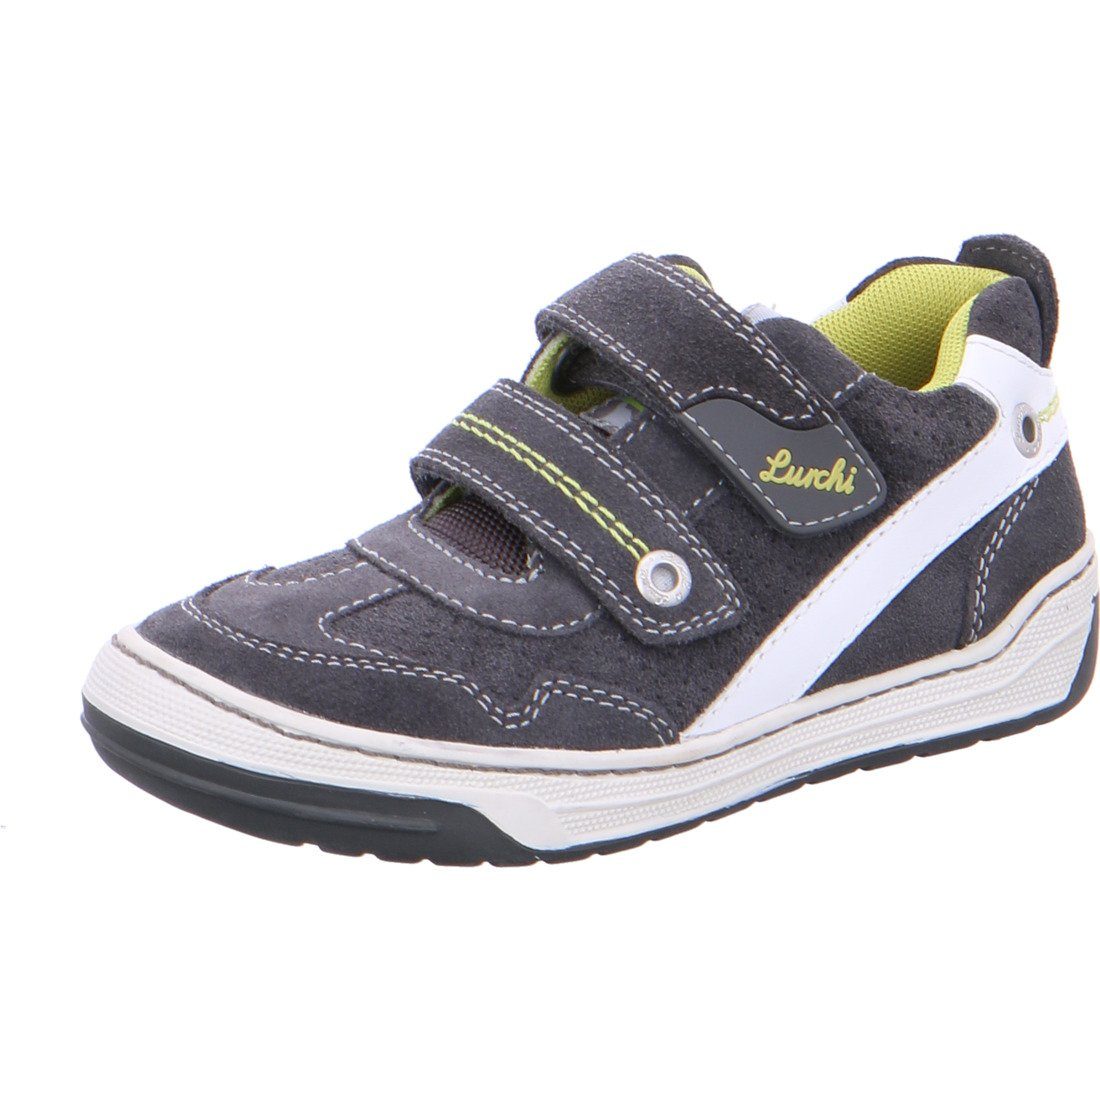 Bruce Rauleder 036954 Sneaker Jungen Sneaker grau Schuhe, Lurchi - Lurchi